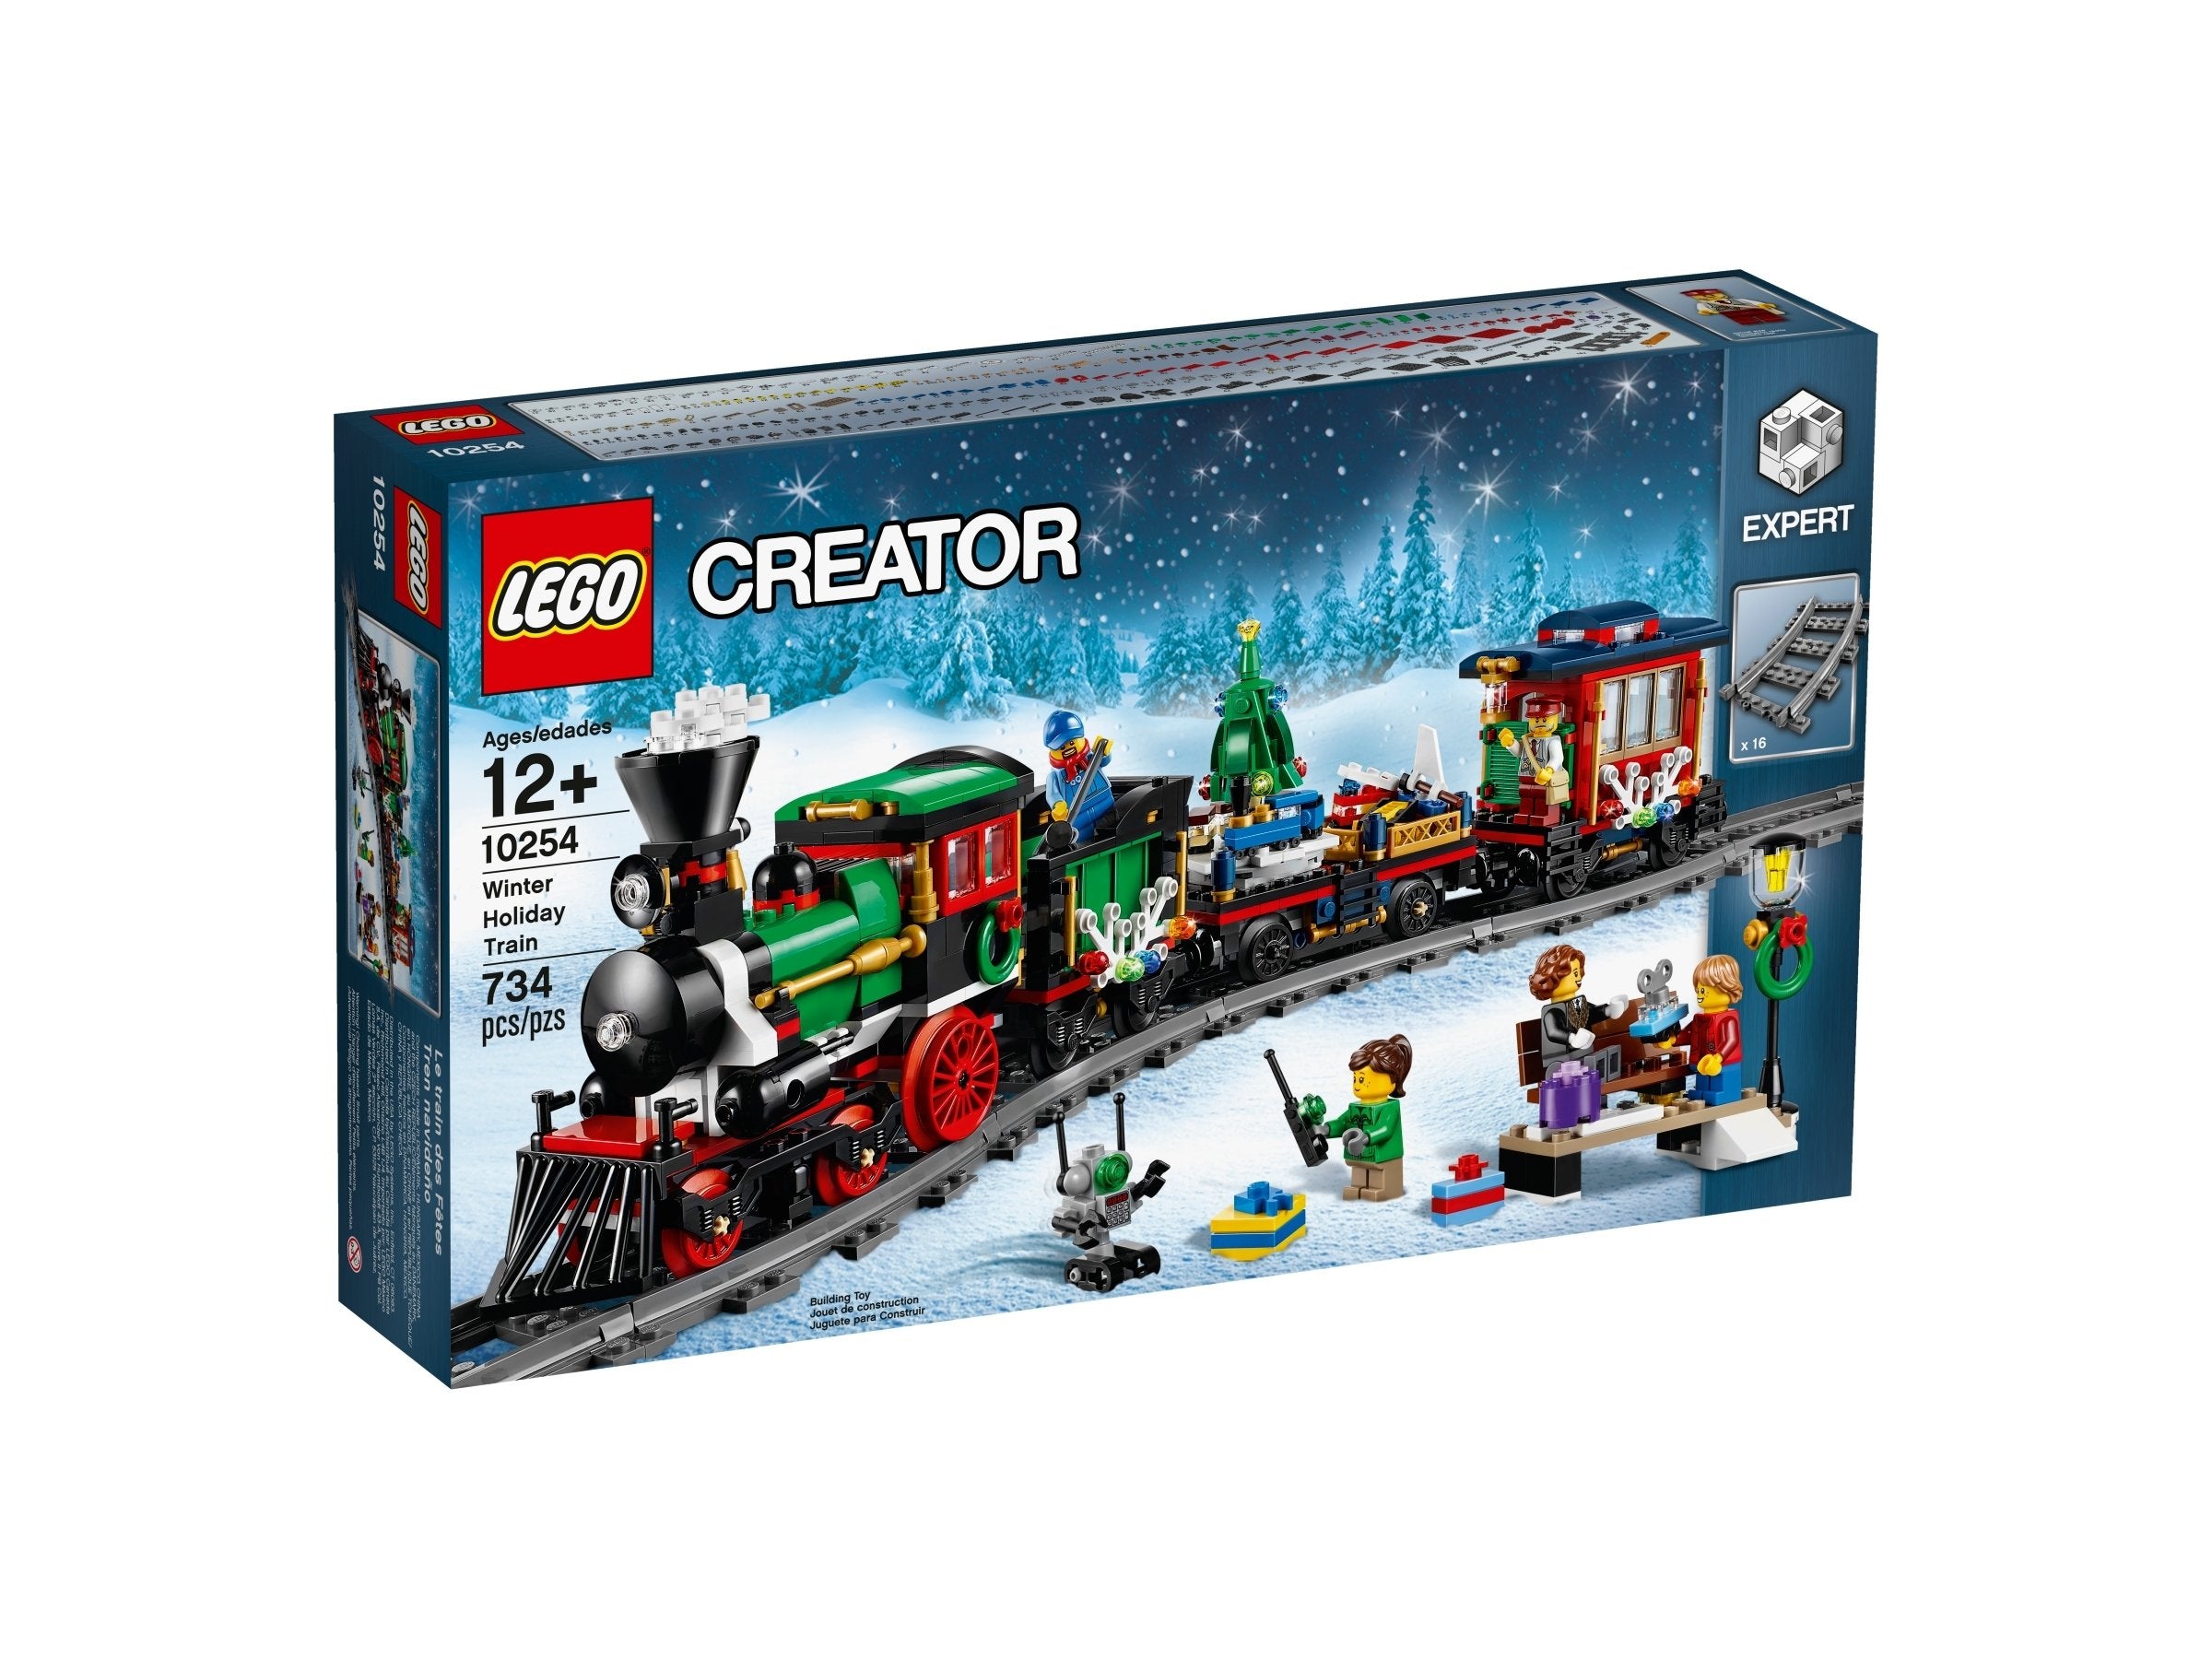 LEGO Creator Festlicher Weihnachtszug (10254) - im GOLDSTIEN.SHOP verfügbar mit Gratisversand ab Schweizer Lager! (5702015591065)